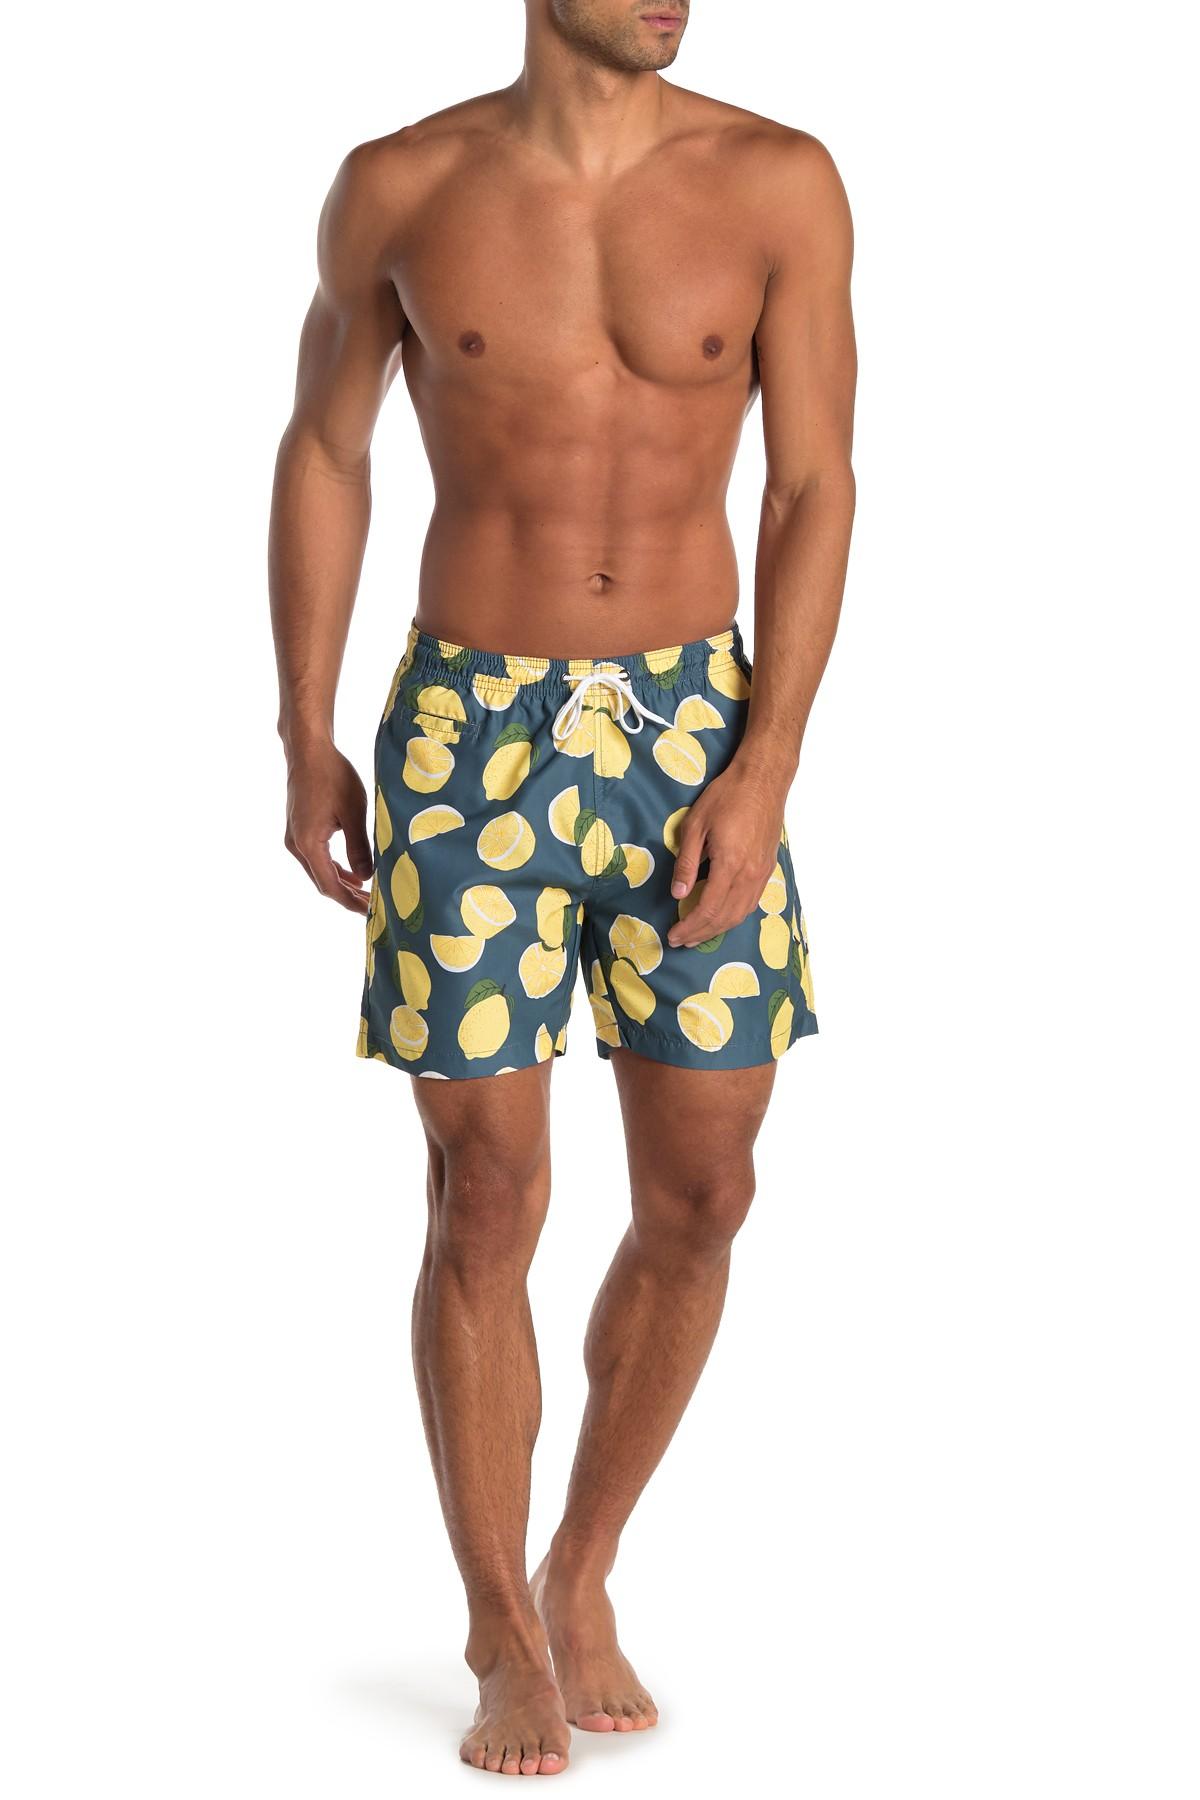 TRUNKS SURF AND SWIM CO Sano Lemon Print Swim Shorts for Men - Lyst